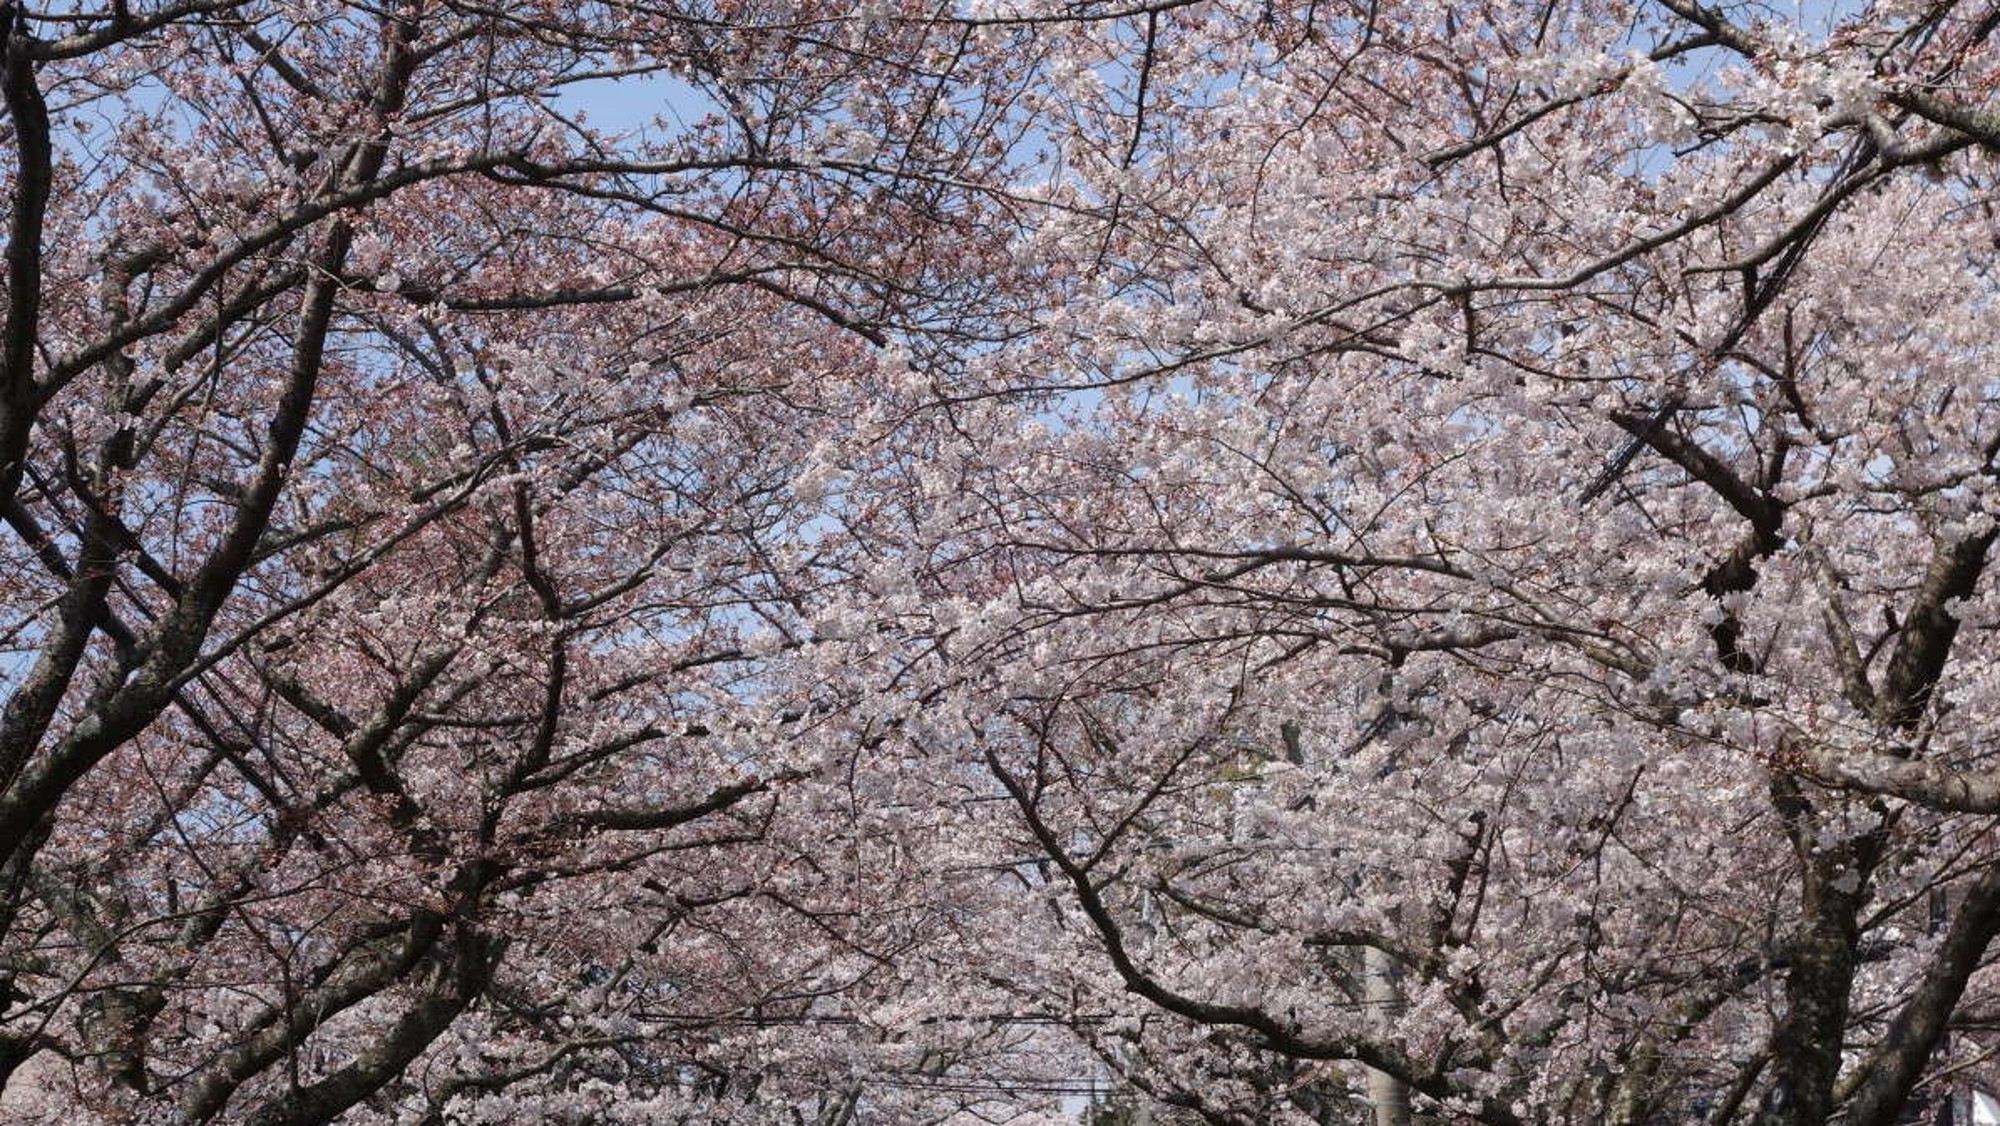 伊豆高原の桜並木。桜のトンネルを通り抜けて、春をいっぱいに感じてください。